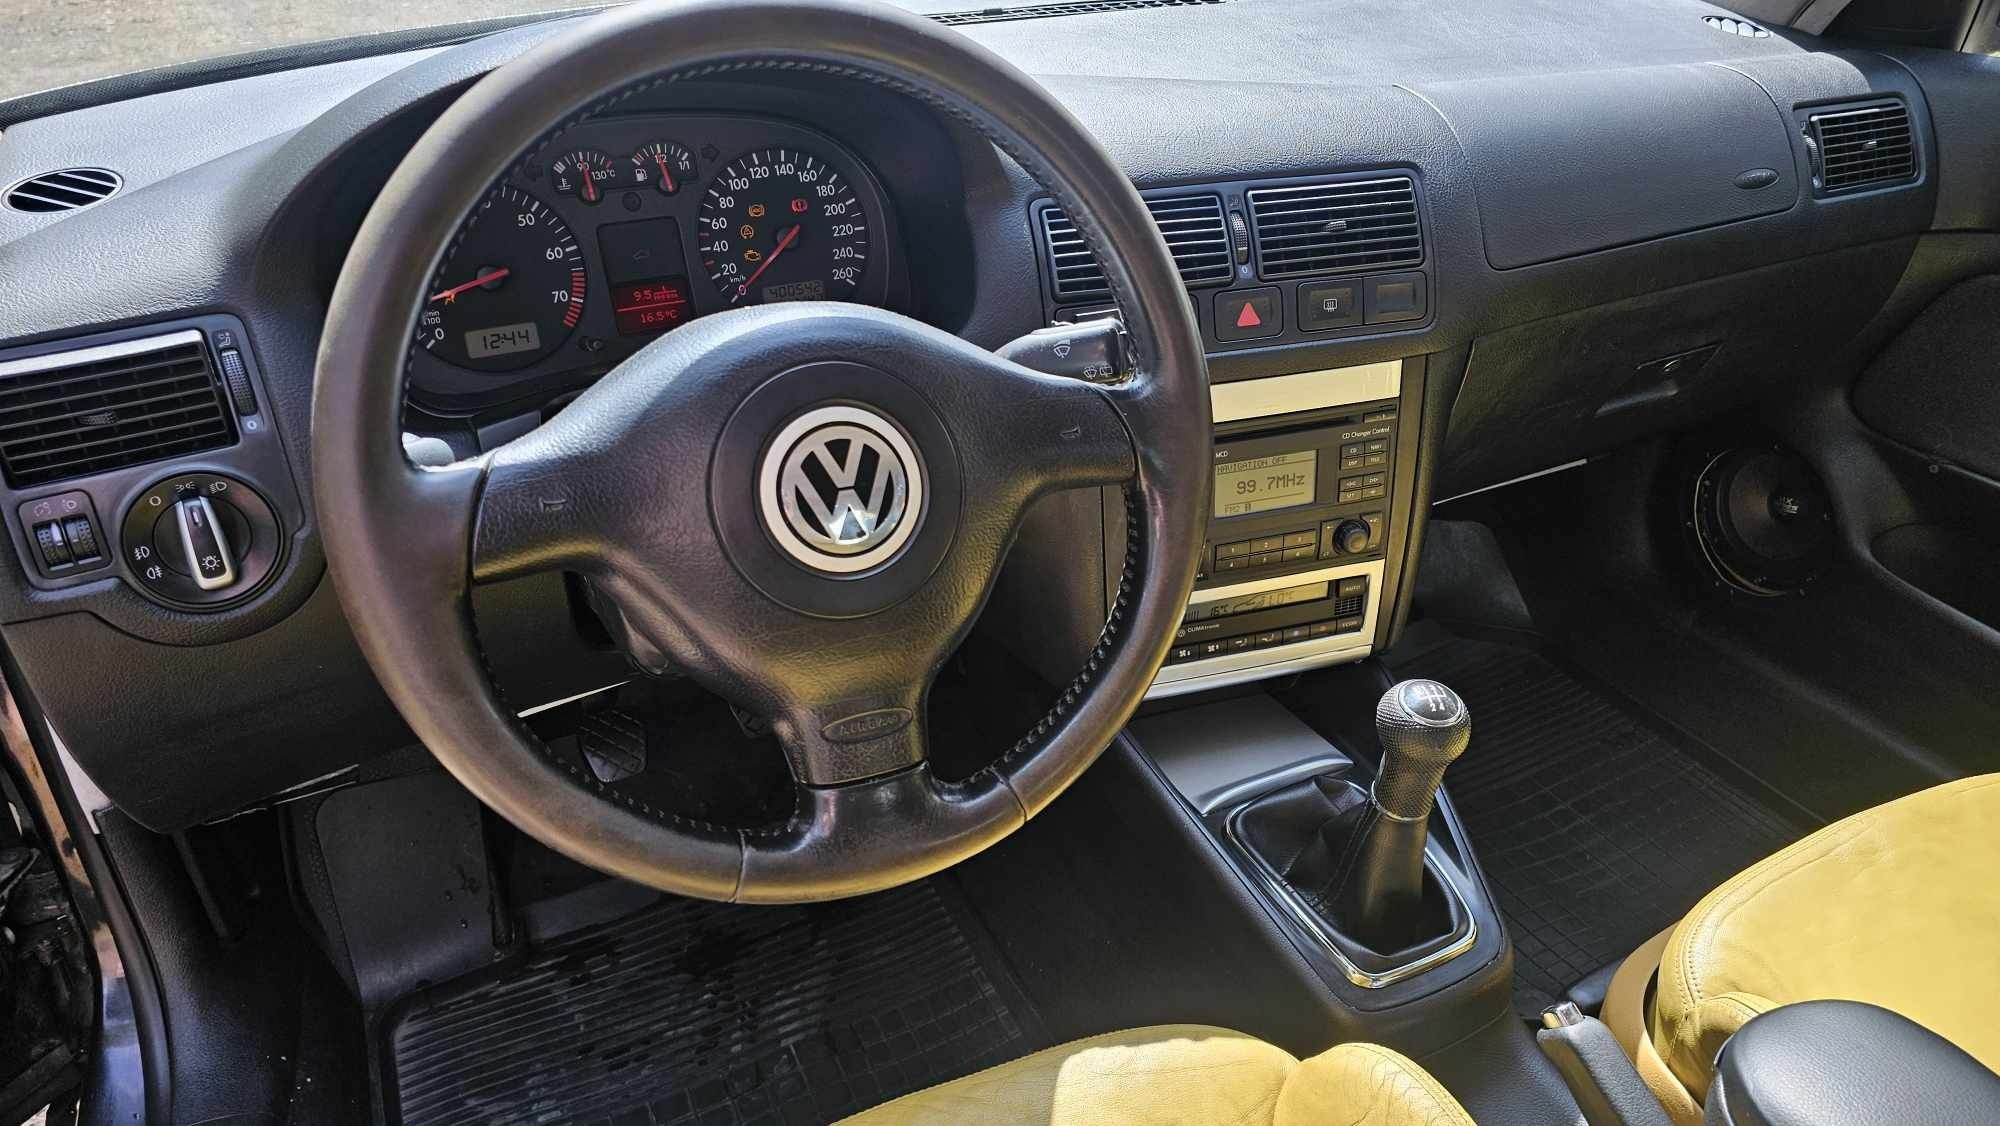 Volkswagen golf 4 2.0 lpg